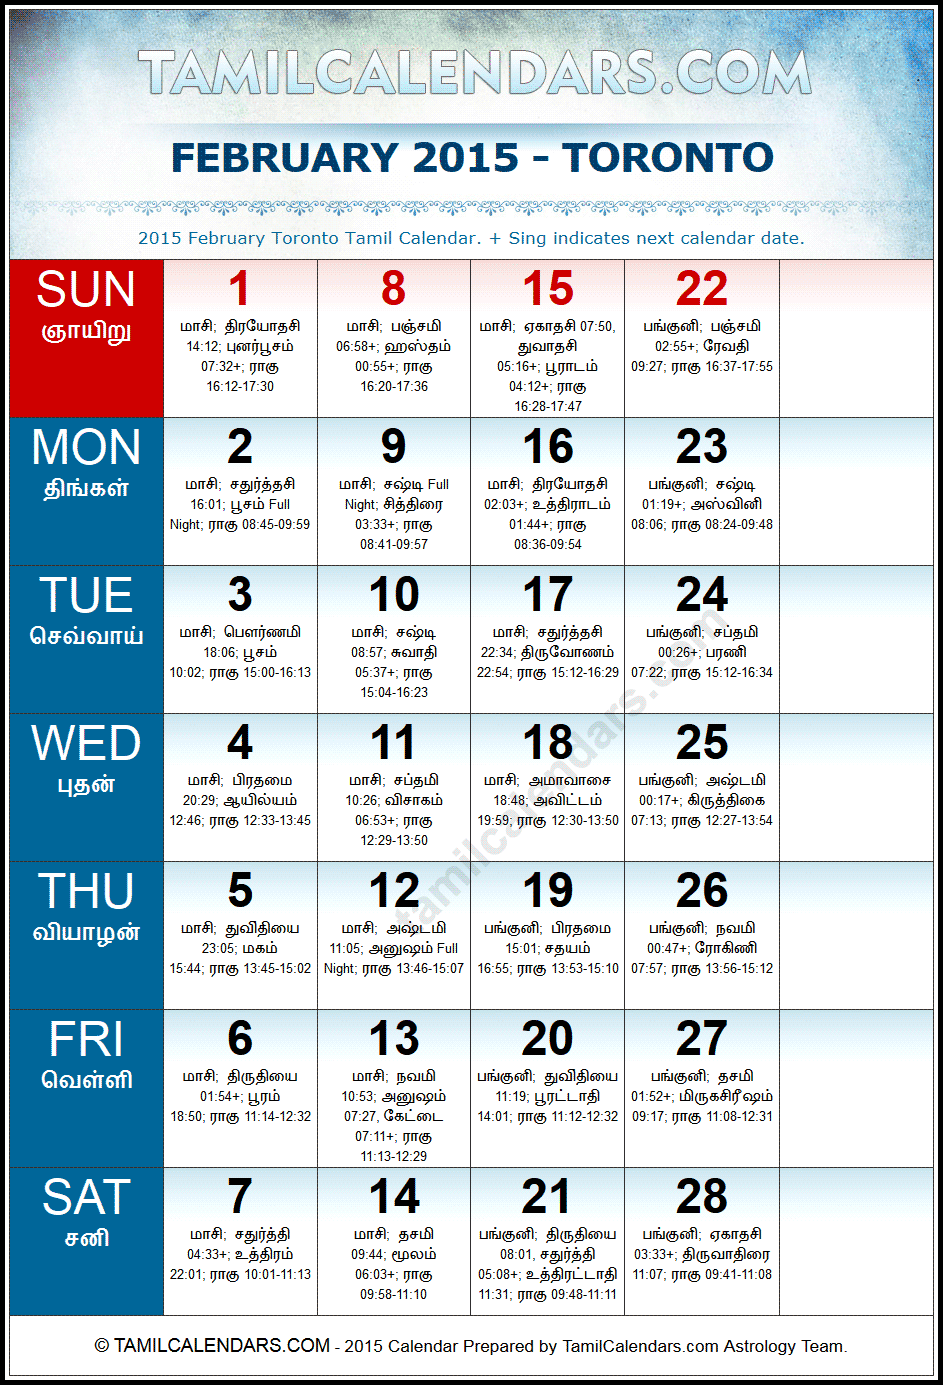 February 2015 Tamil Calendar for Toronto, Canada